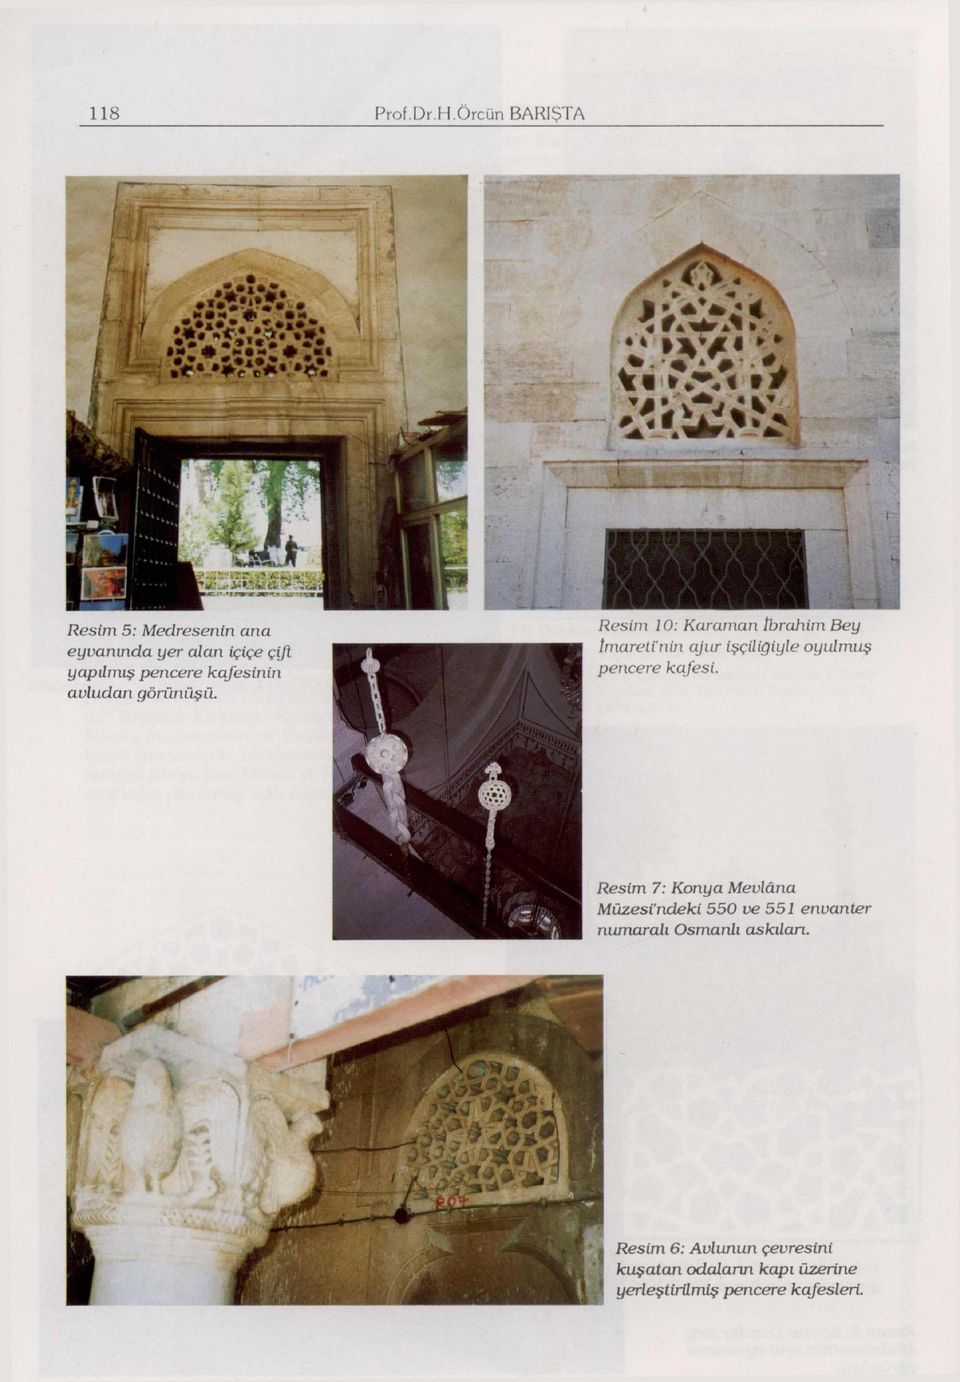 7" Resim 10: Karaman tldrahiın Bey tmareti'nin ajur işçiliğiyle oyulmuş pencere kafesi.